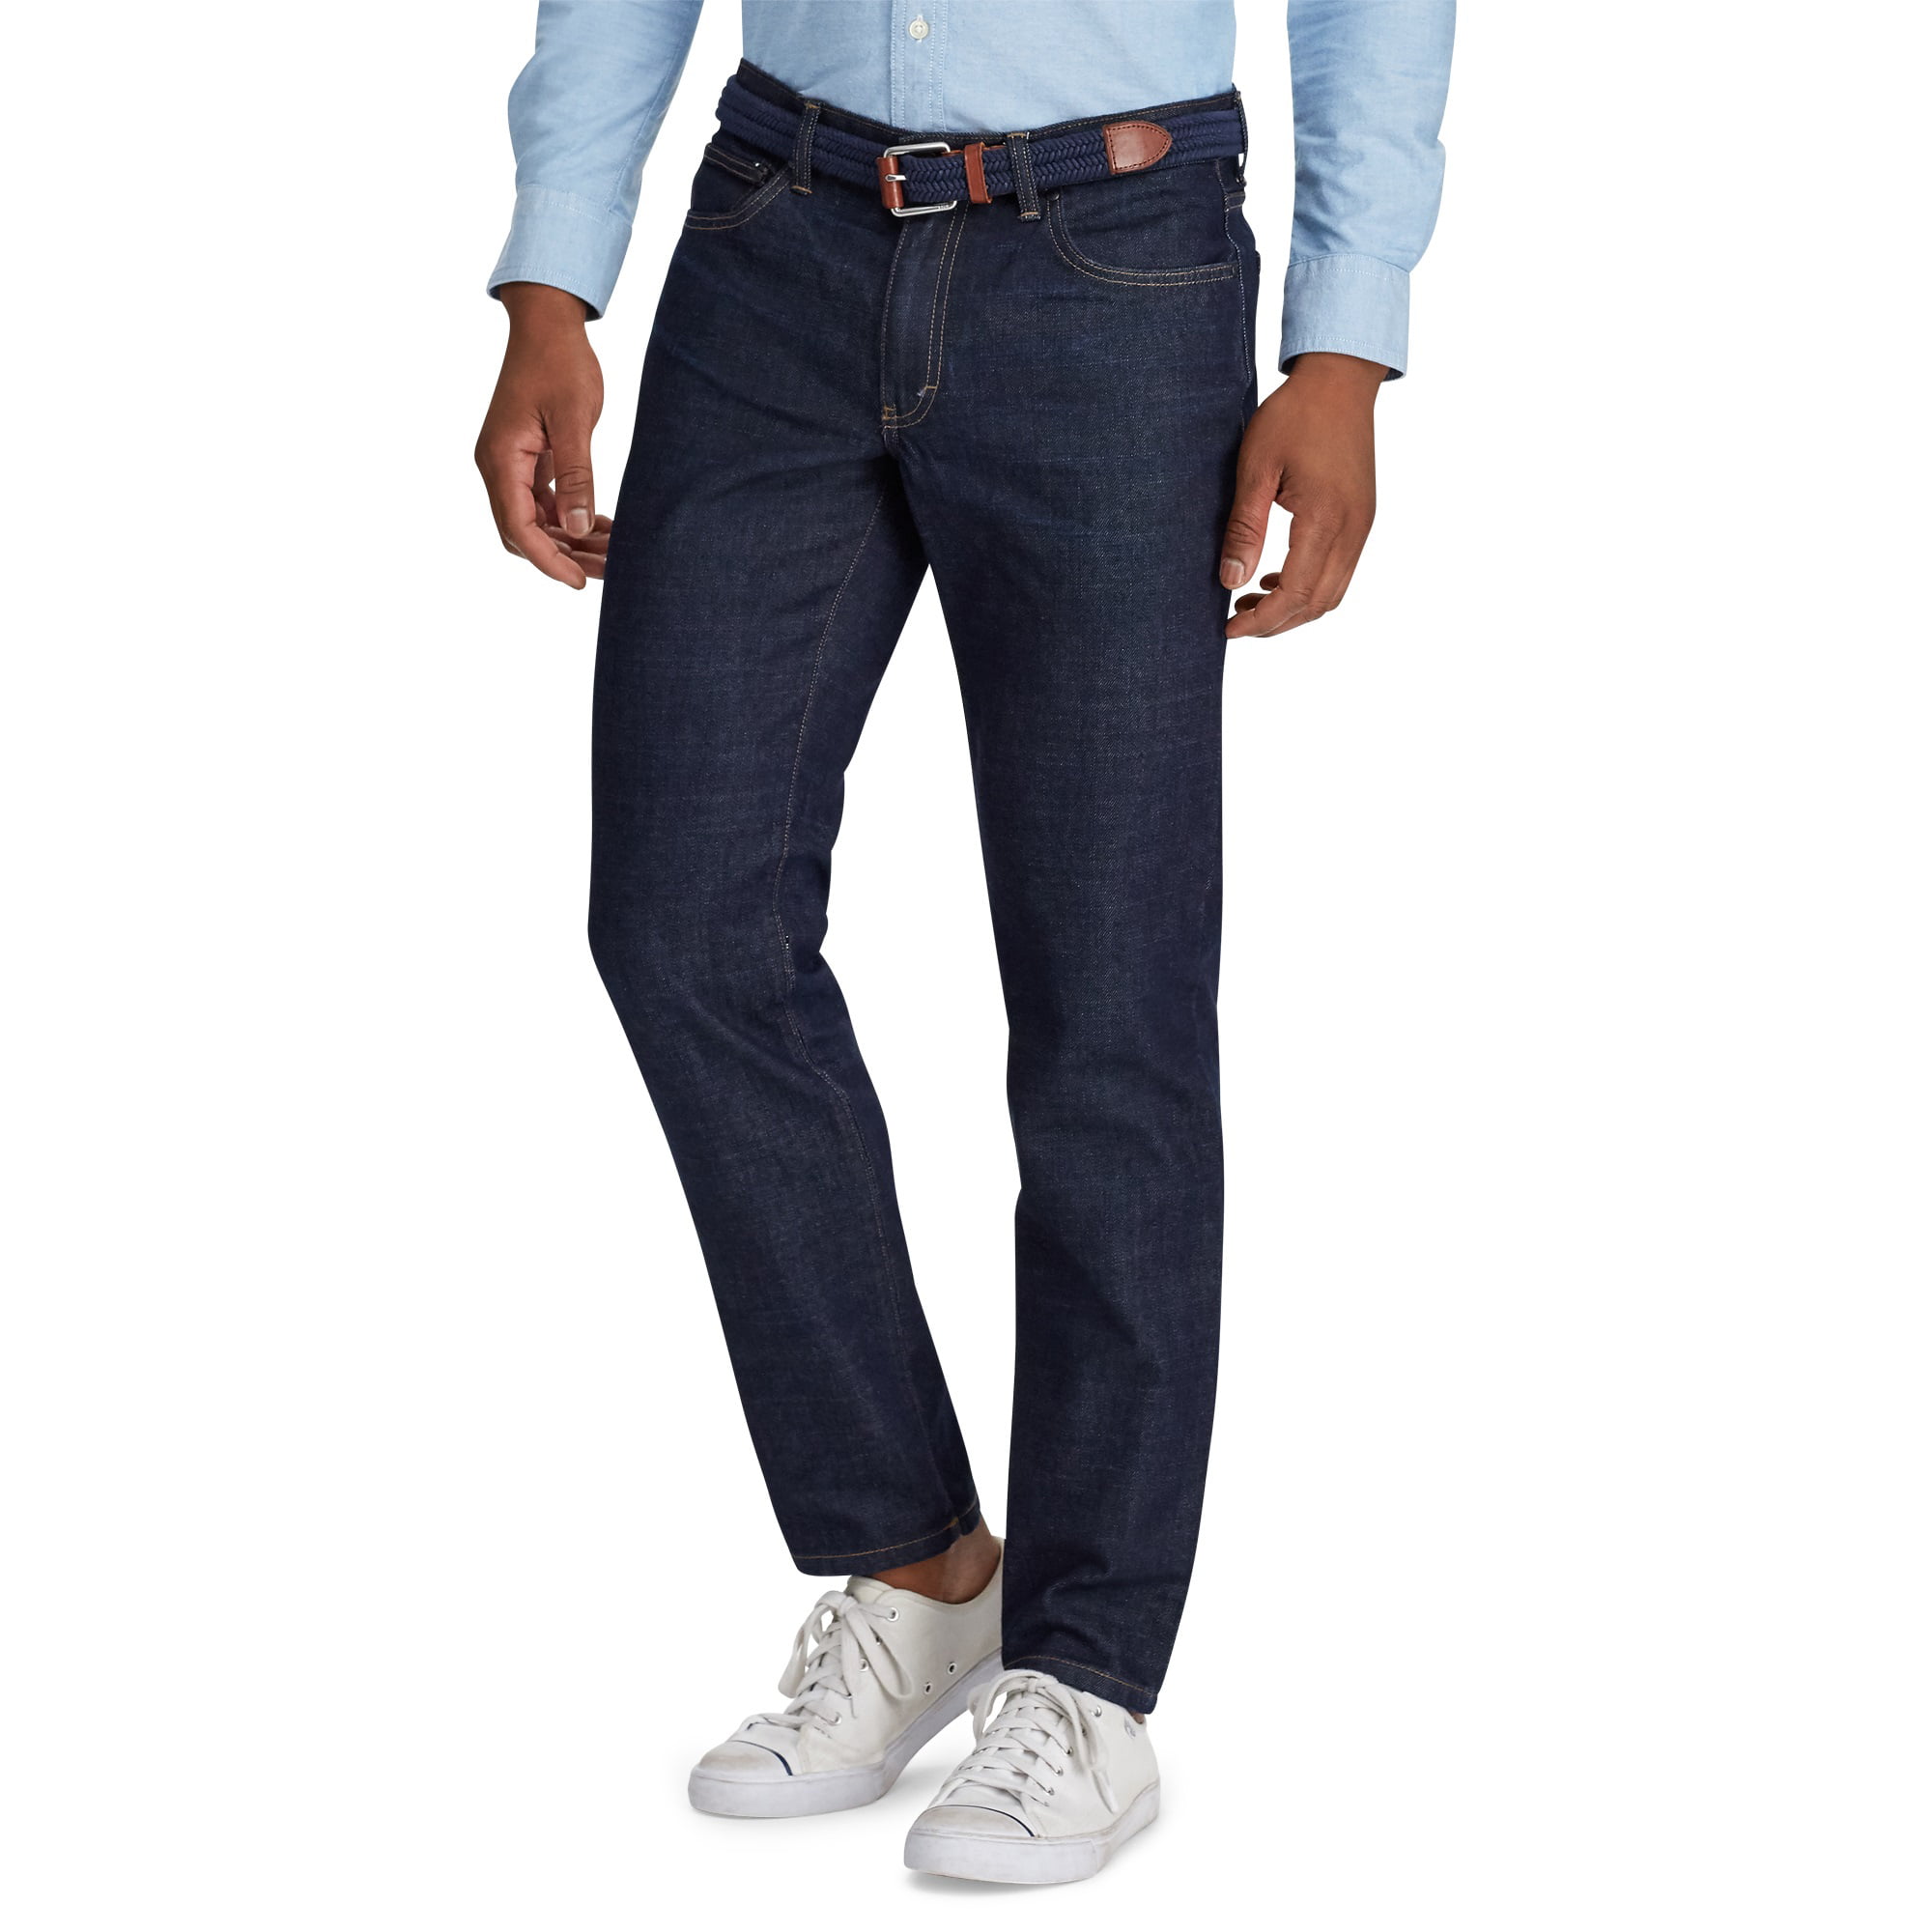 kassa molecuul Middeleeuws Chaps Men's Slim Straight Fit Jeans - Walmart.com